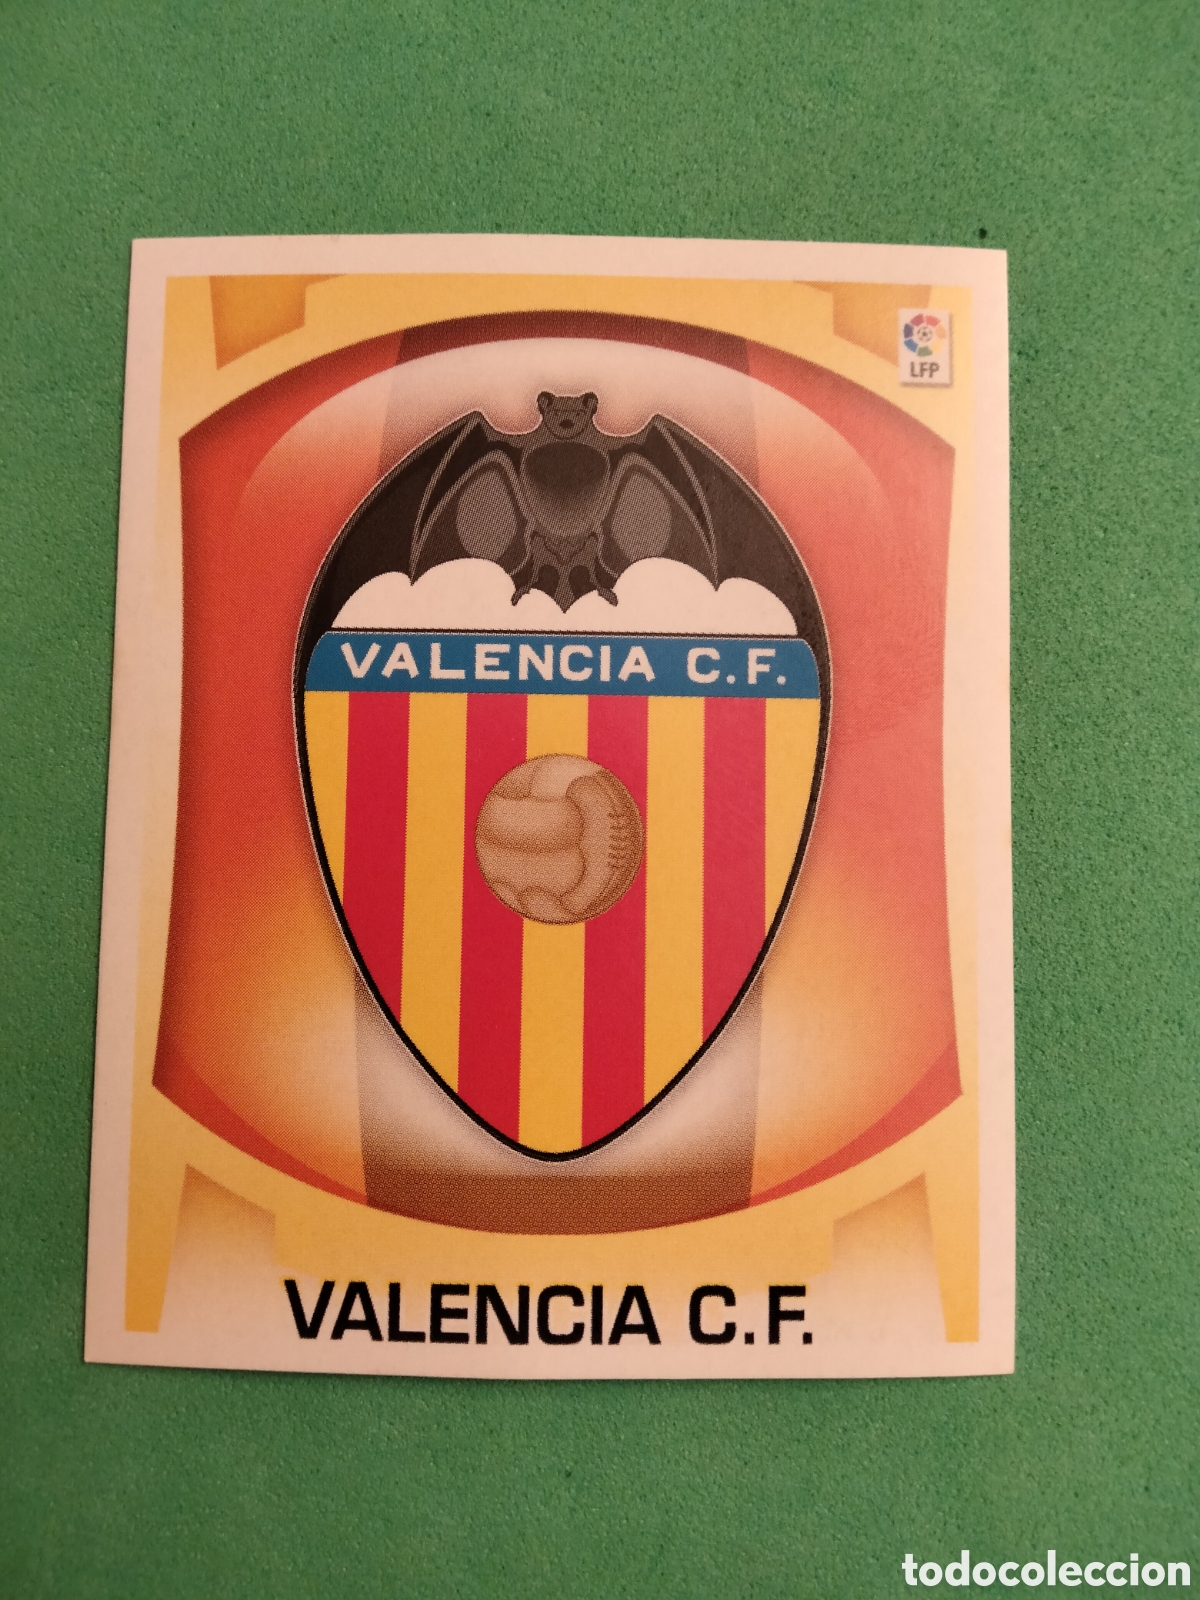 futbol - valencia c.f. - antiguo escudo pintado - Compra venta en  todocoleccion